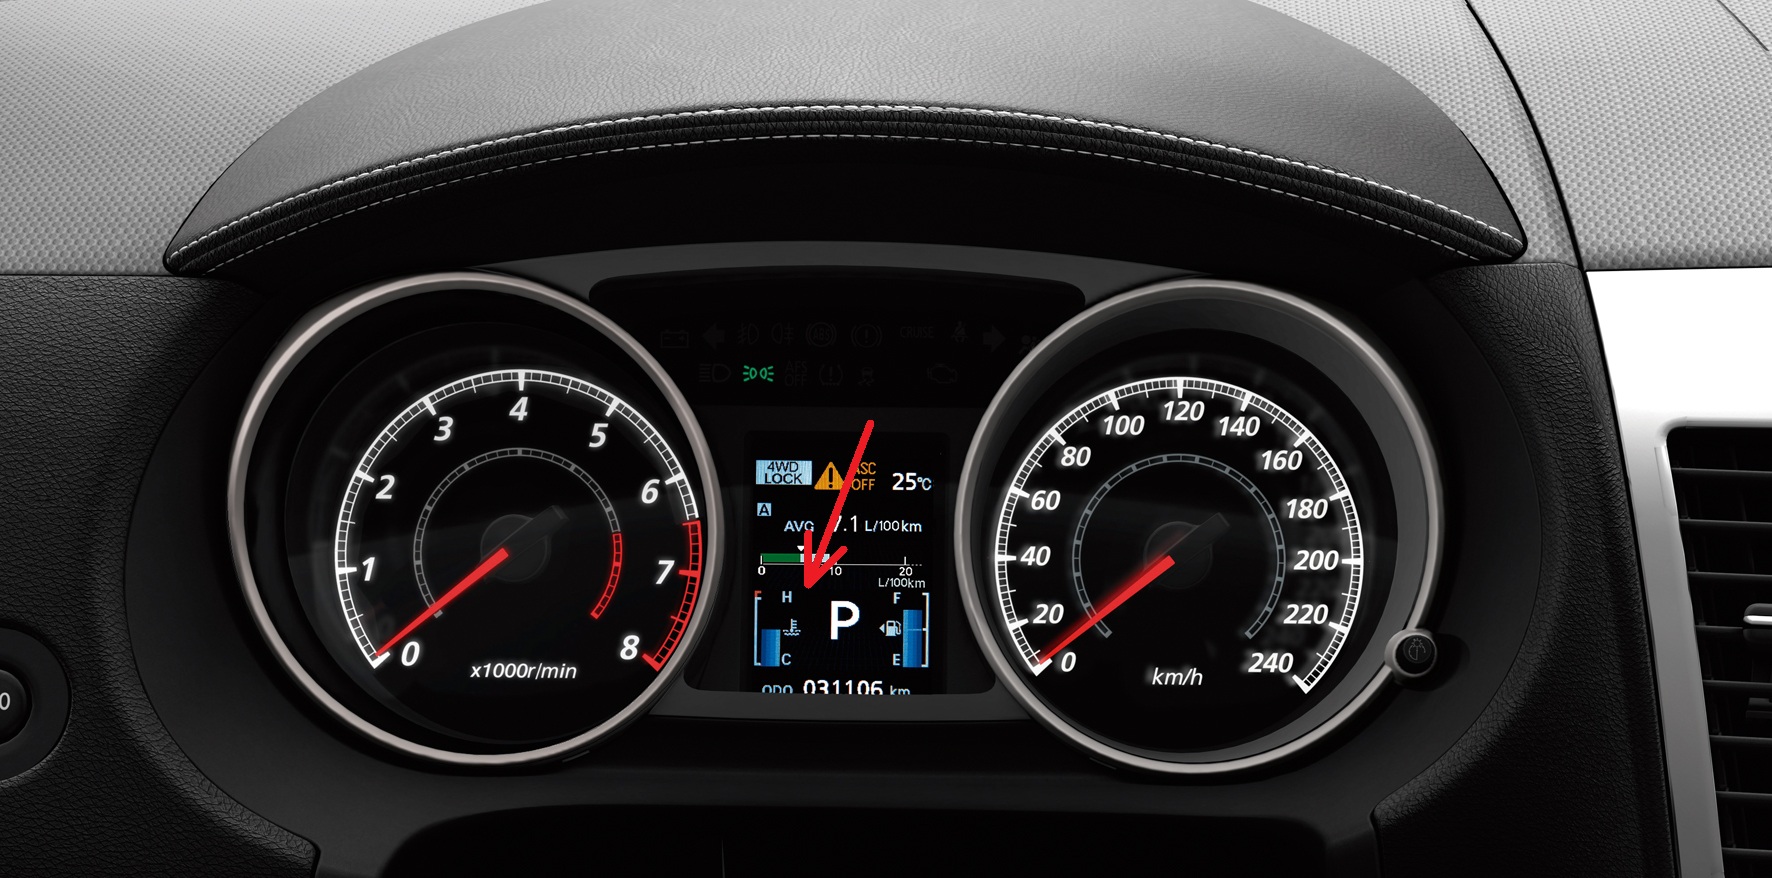 Размещение на панели приборов указателя температуры охлаждающей жидкости двигателя Mitsubishi Outlander XL